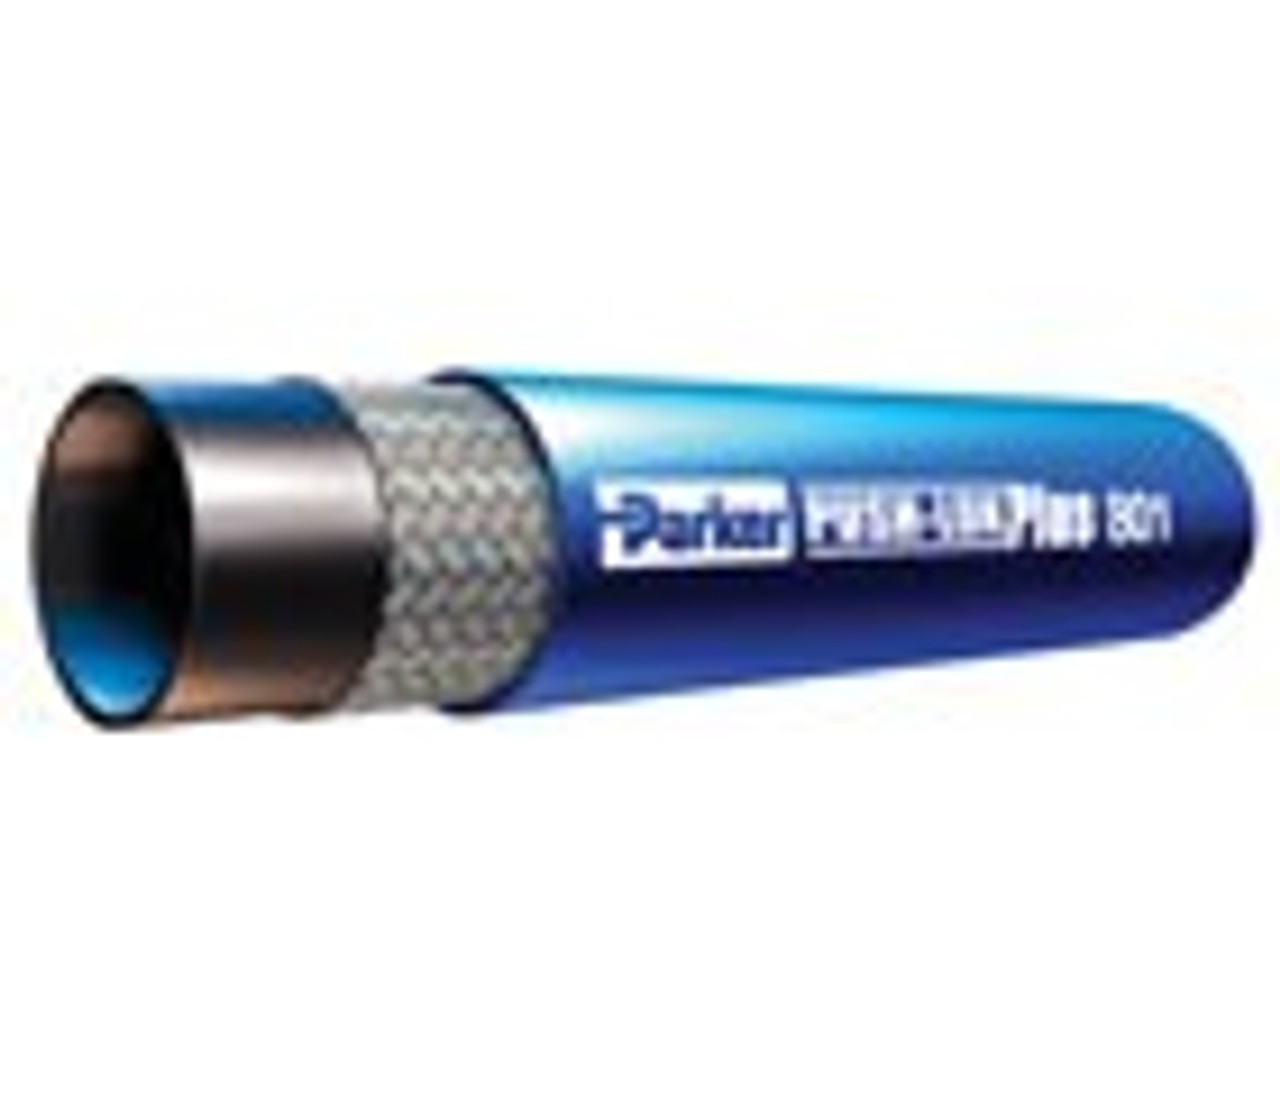 Parker 821-10-Rl 5/8" Id Push-Lok Hose Black Fiber Braided Cover 250Psi (17Bar) 1 Fiber Braid Temp Range Degrees F: (-40/+212)